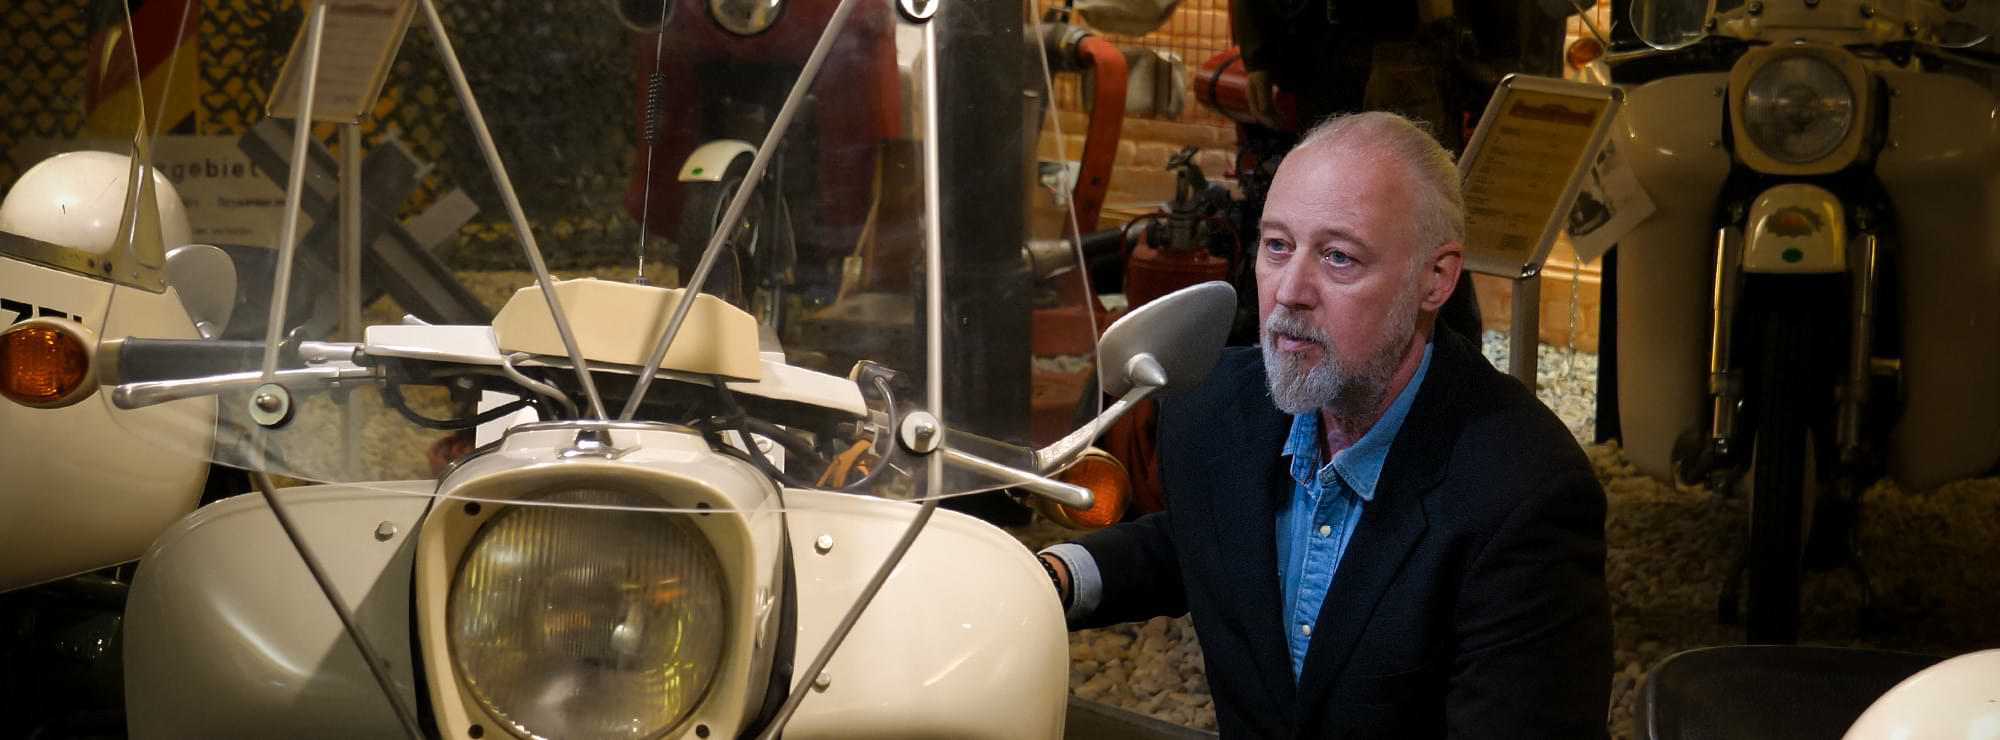 Thomas Müller in einem Motorradmuseum, knieend vor einer Maschine, und bewundert diese